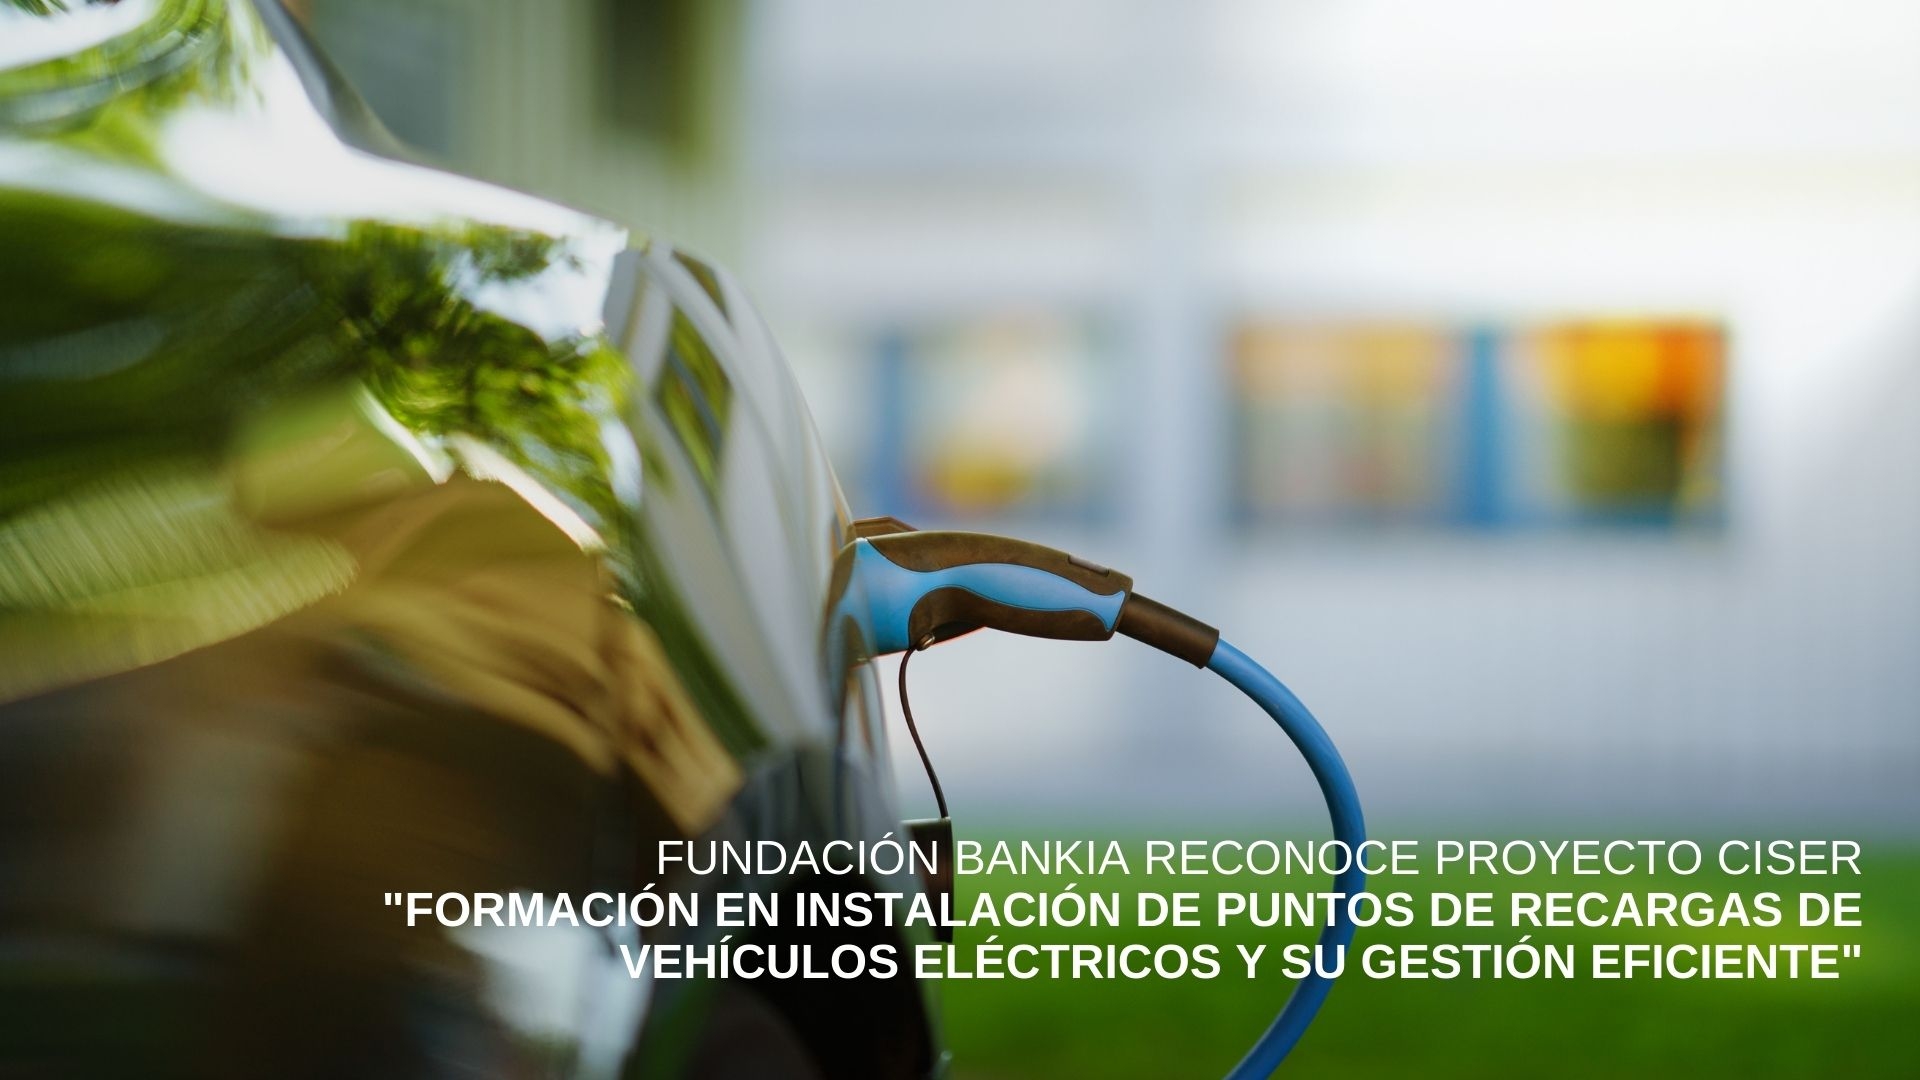 Cenifer-CISER Fundación Bankia reconoce proyecto formación en instalación de puntos de recargas de vehículos eléctricos y su gestión eficiente